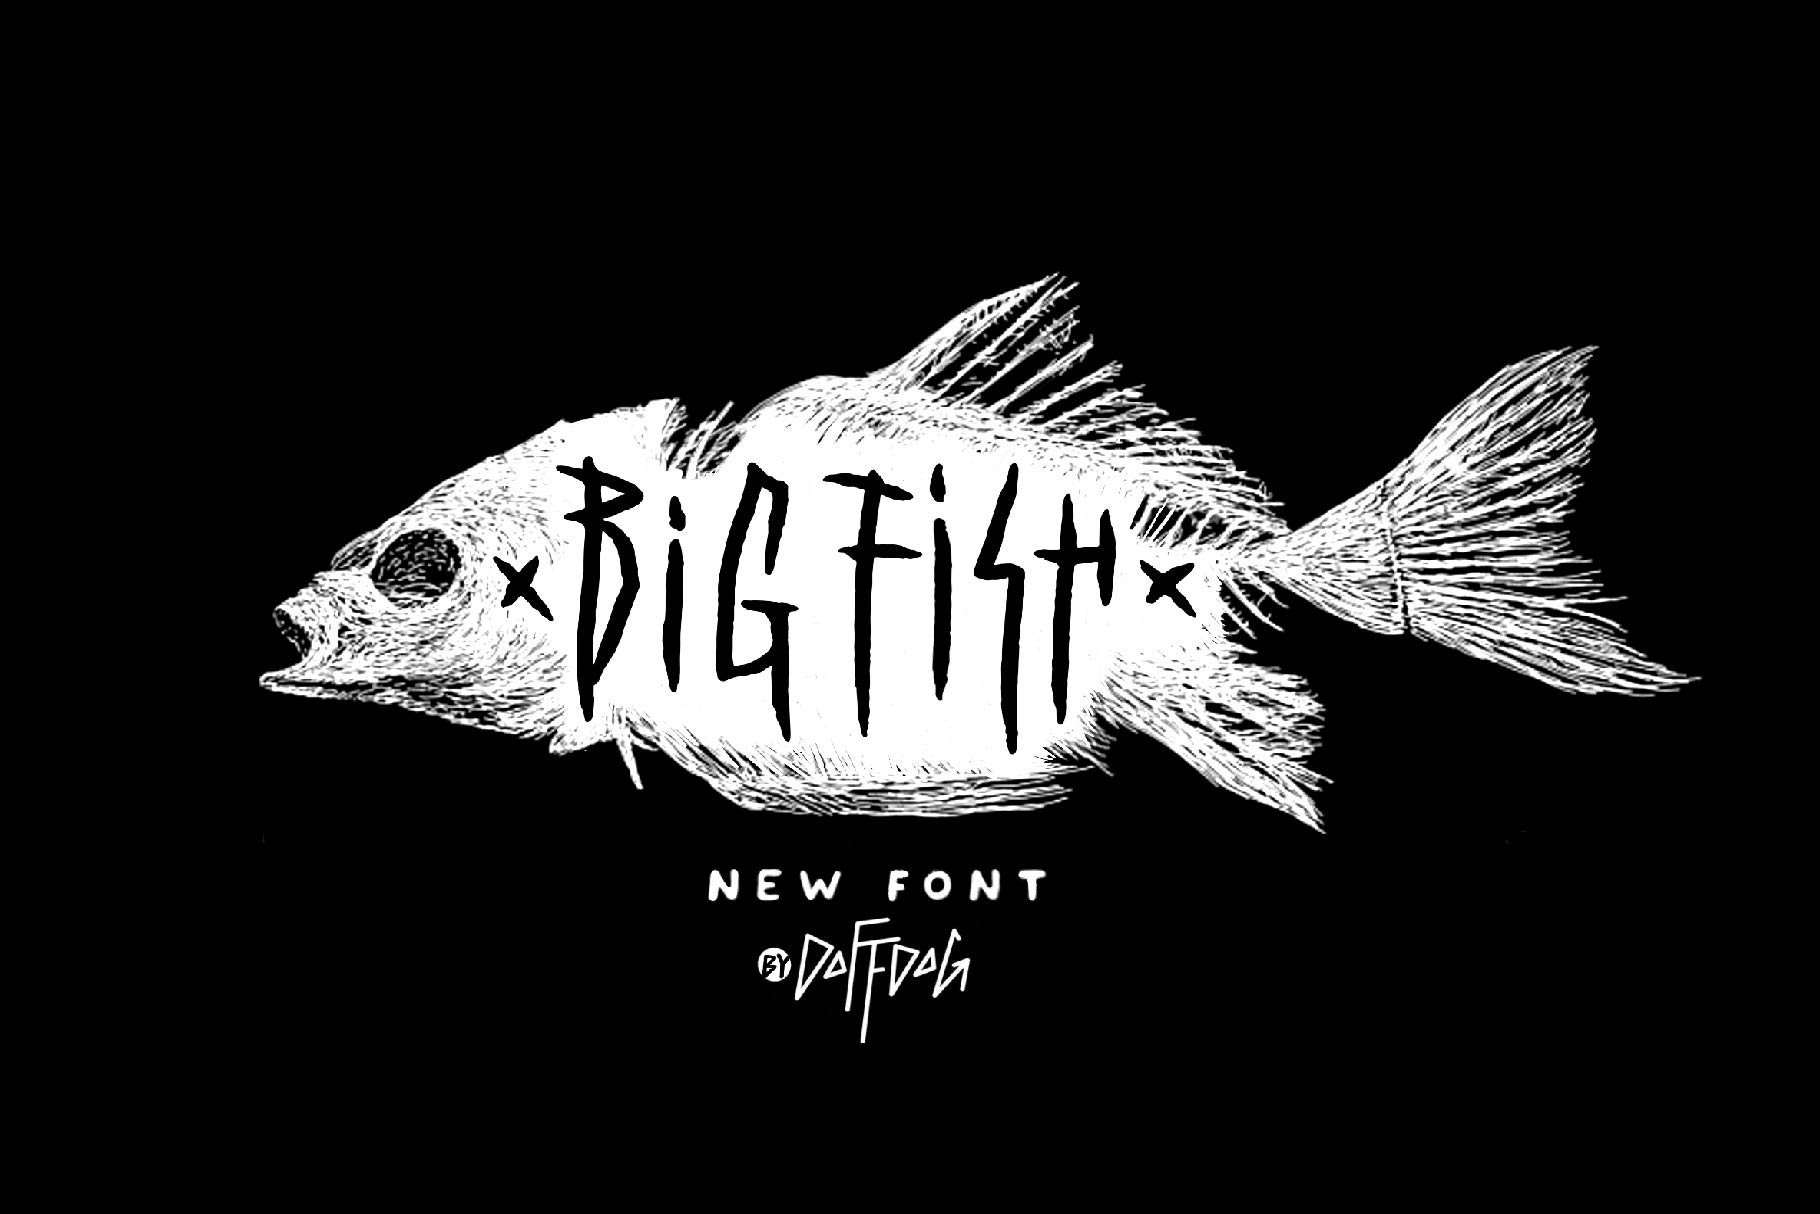 Big Fish DD - rock metal font cover image.